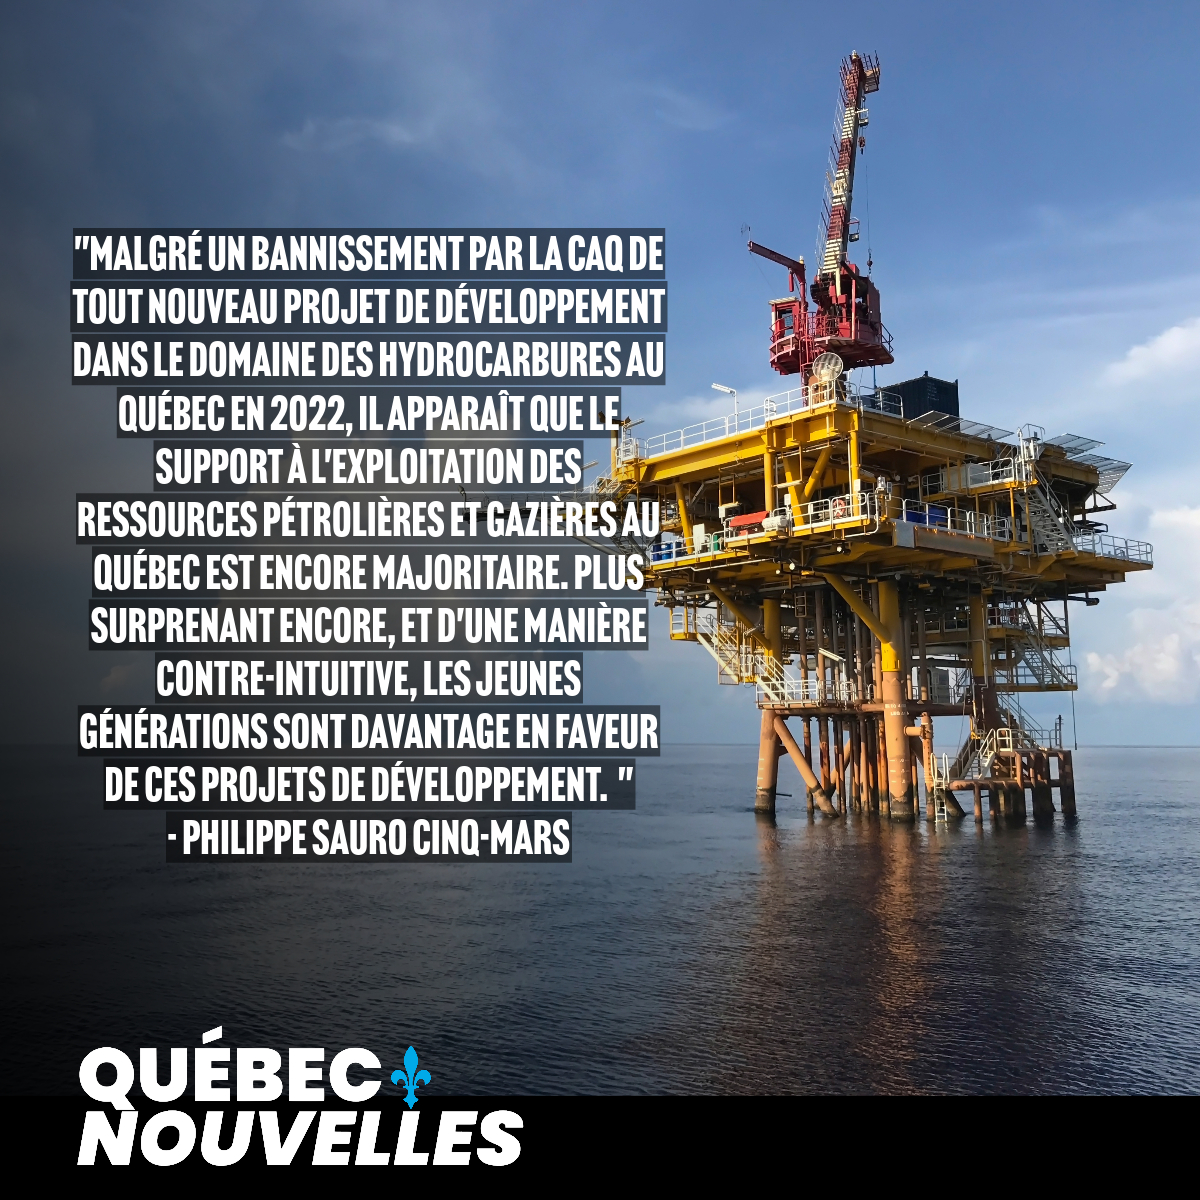 Les jeunes générations davantage en faveur de l'exploitation pétrolière au Québec